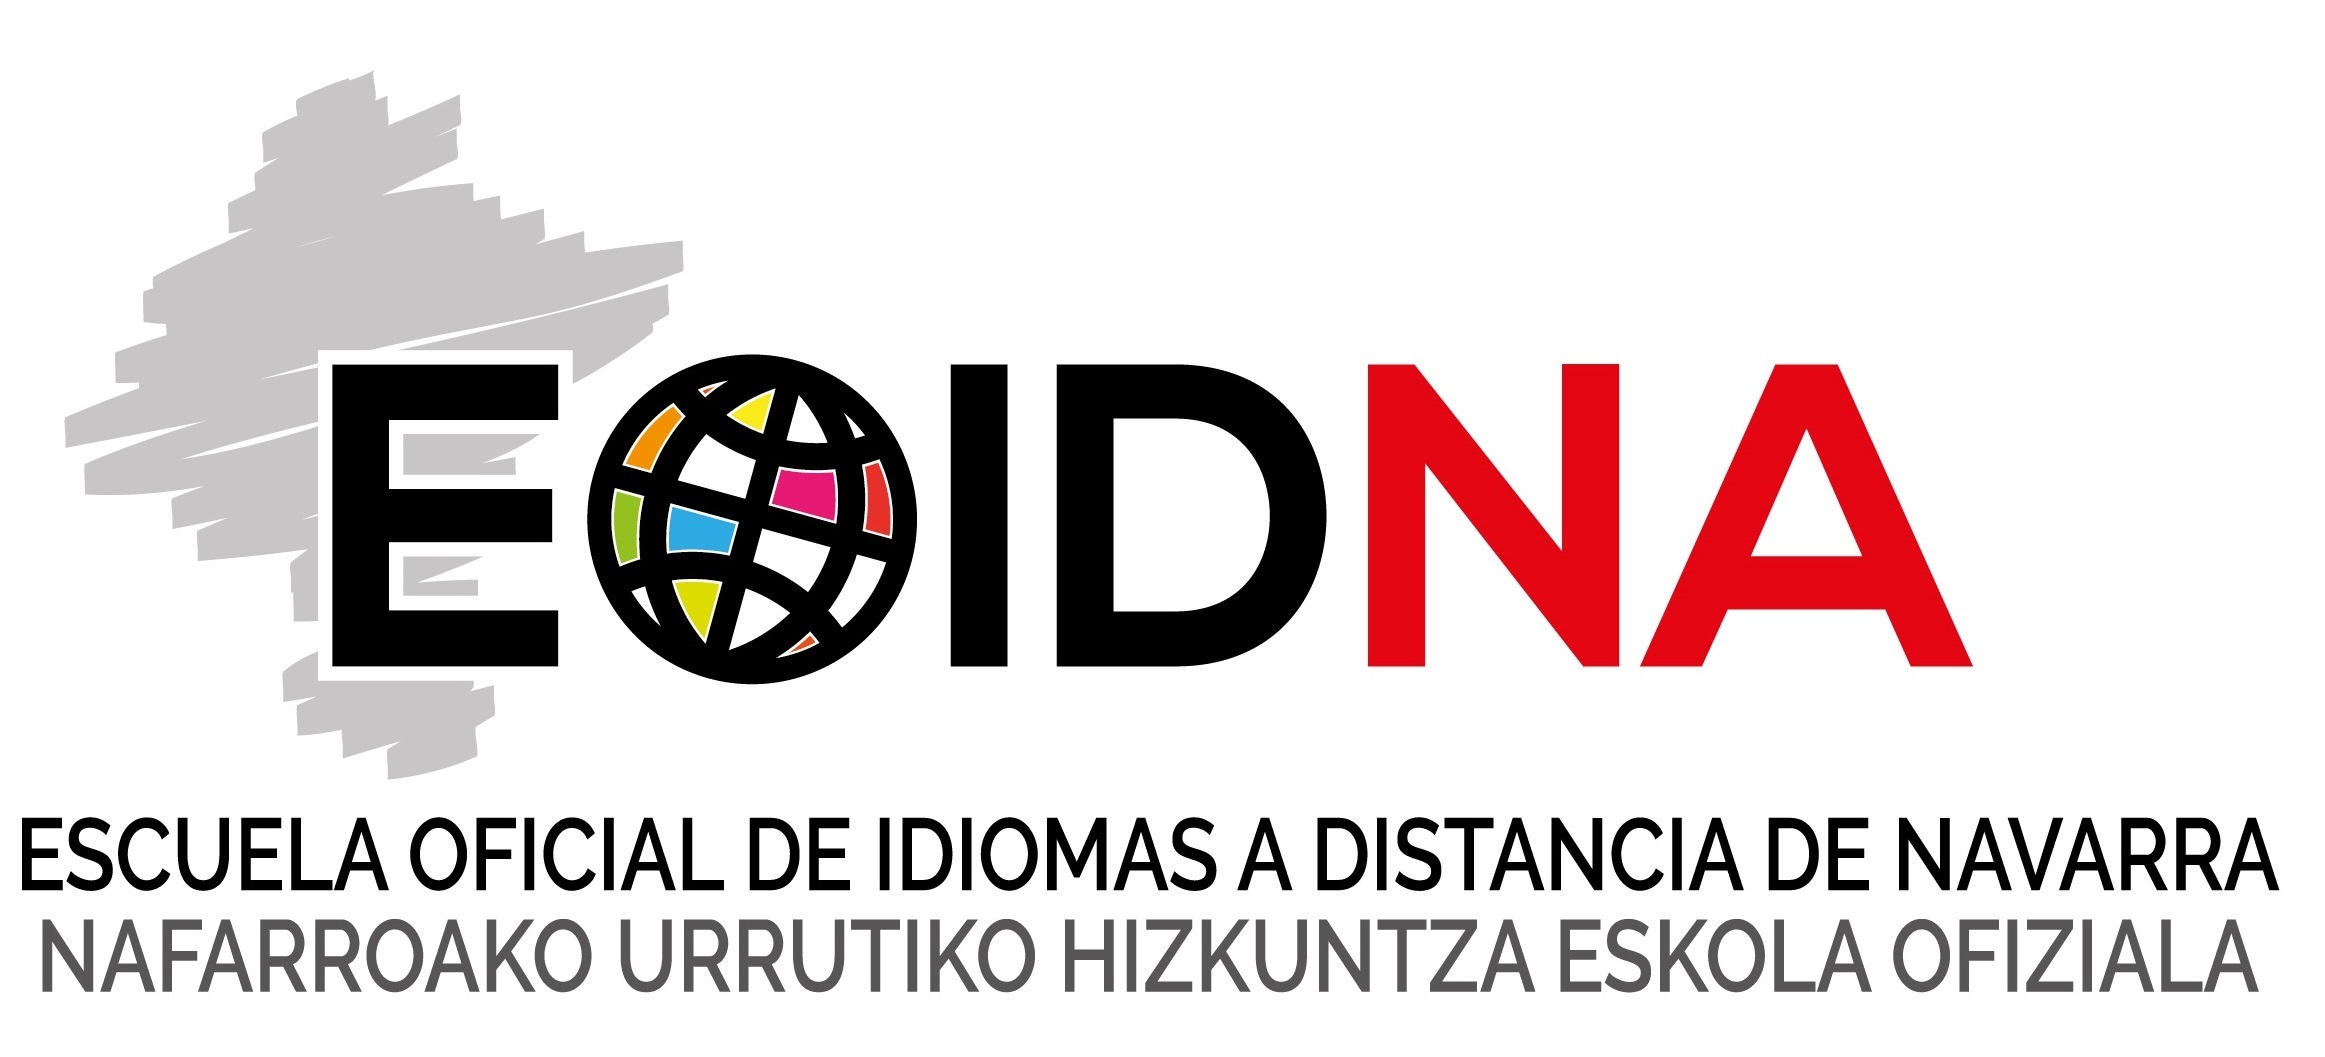 Logotipo Escuela oficial de idiomas de Navarra